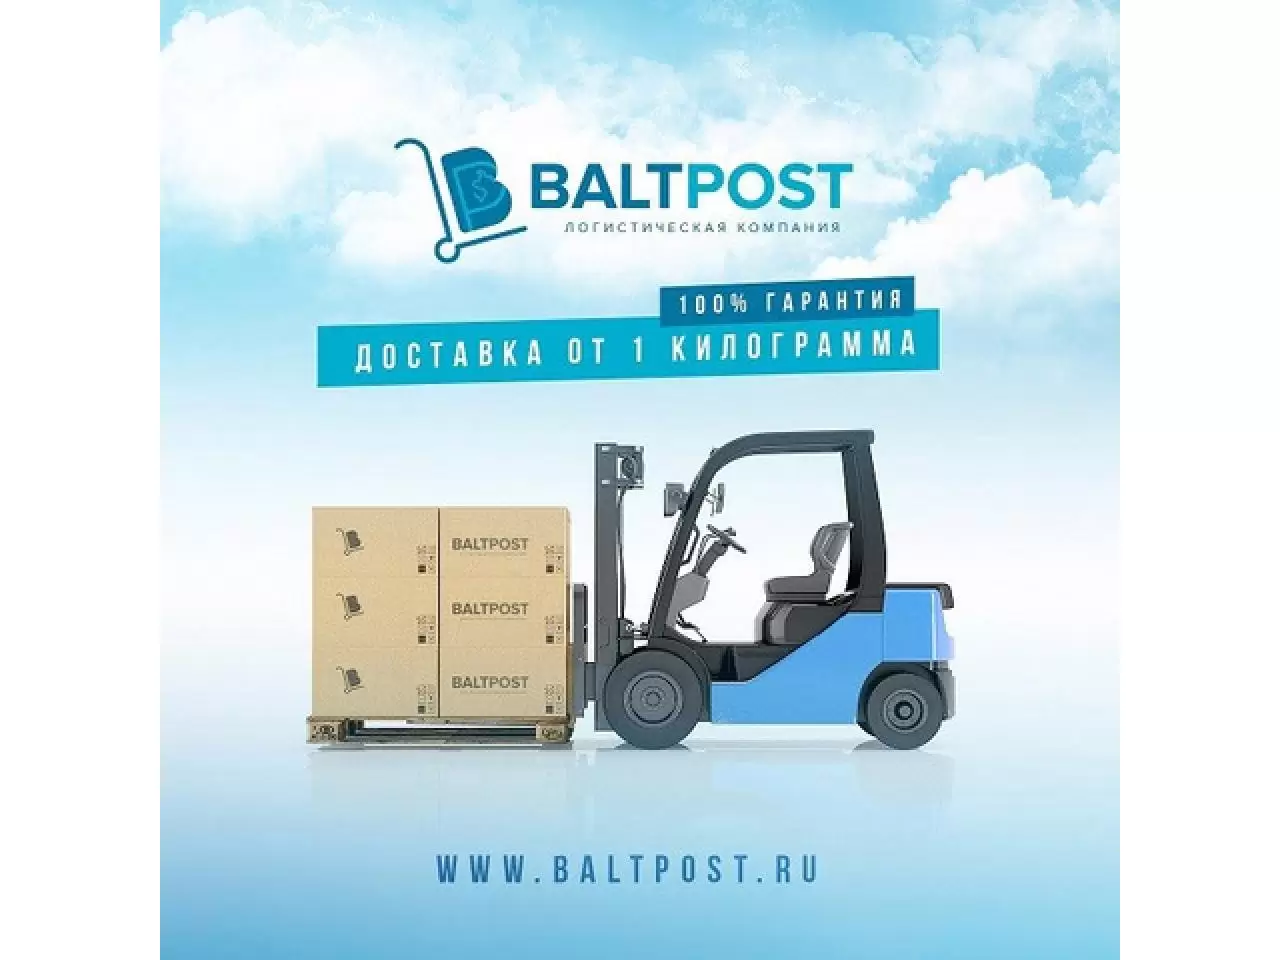 Компания Balt Post поможет вам в поиске техники и оборудования на территории США, Европы или Китая! - 1